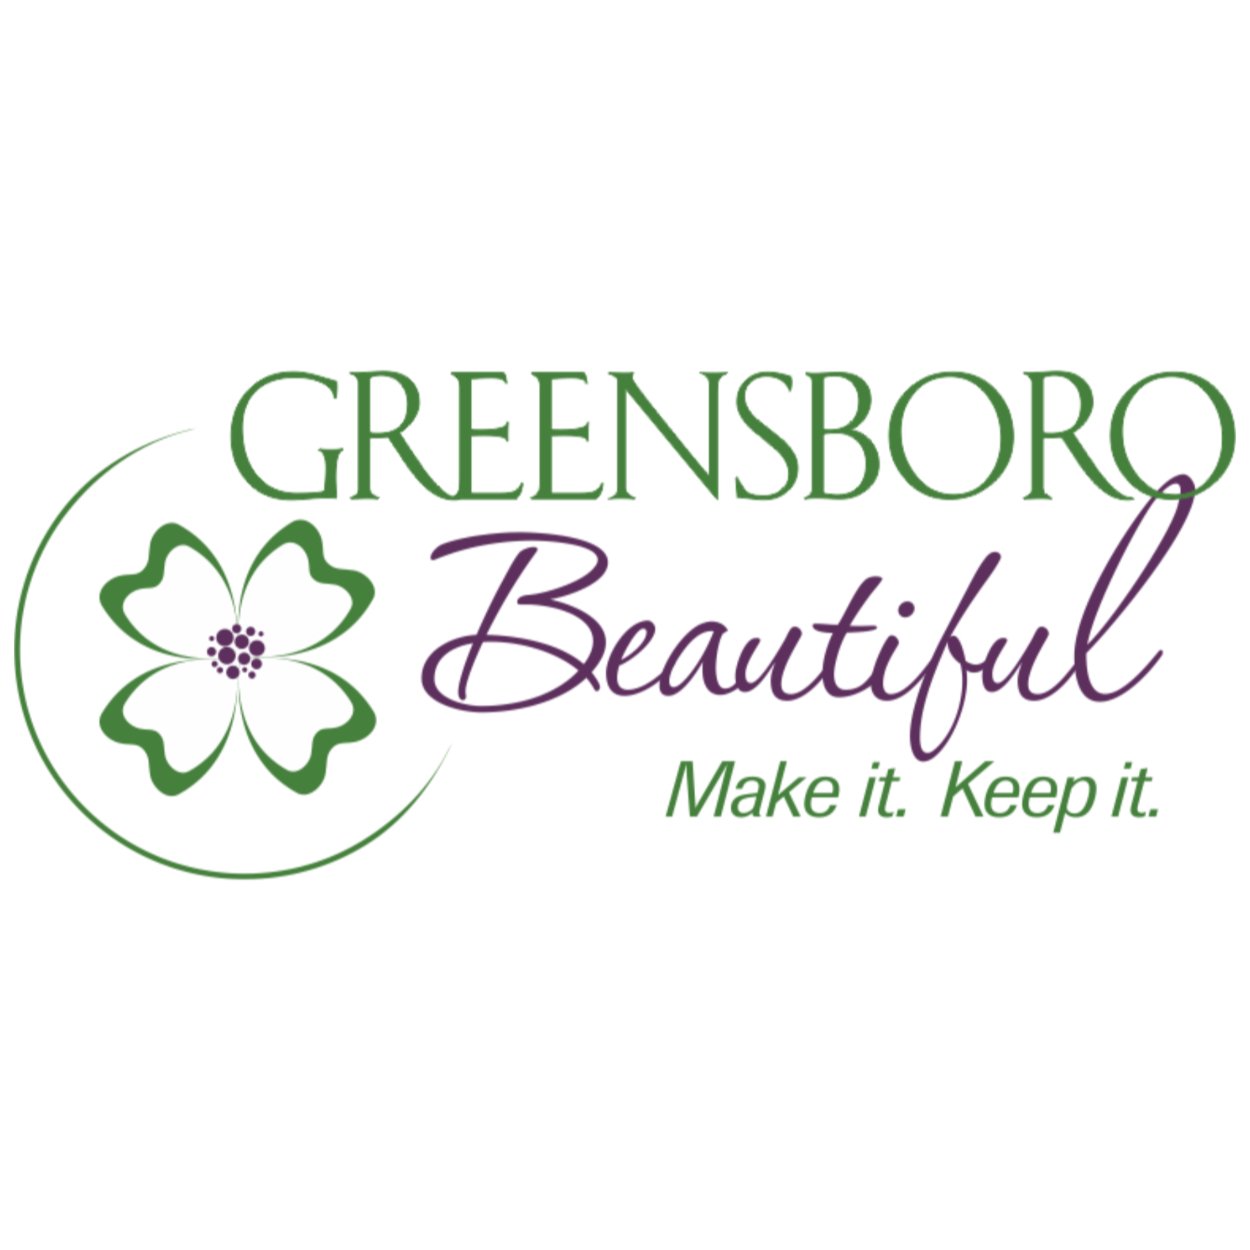 Greensboro Beautiful.jpg